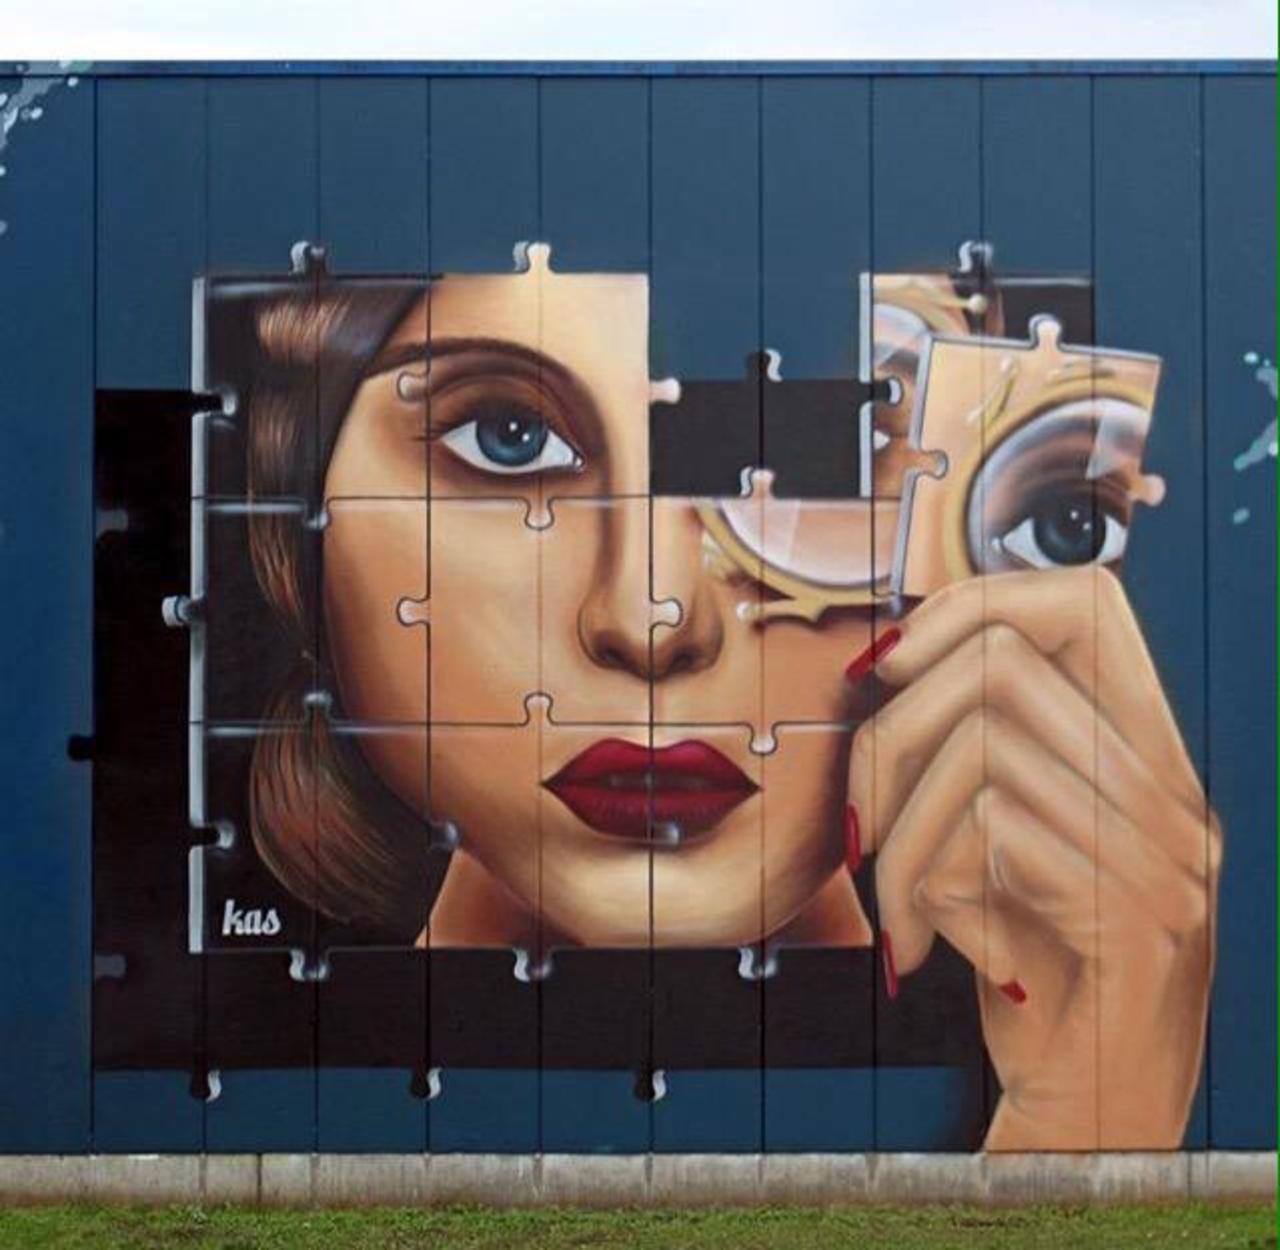 Kas Art's new Street Art "Piece of me" in Aalst Belgium 

#art #graffiti #mural #streetart http://t.co/e5nr7EtdfZ